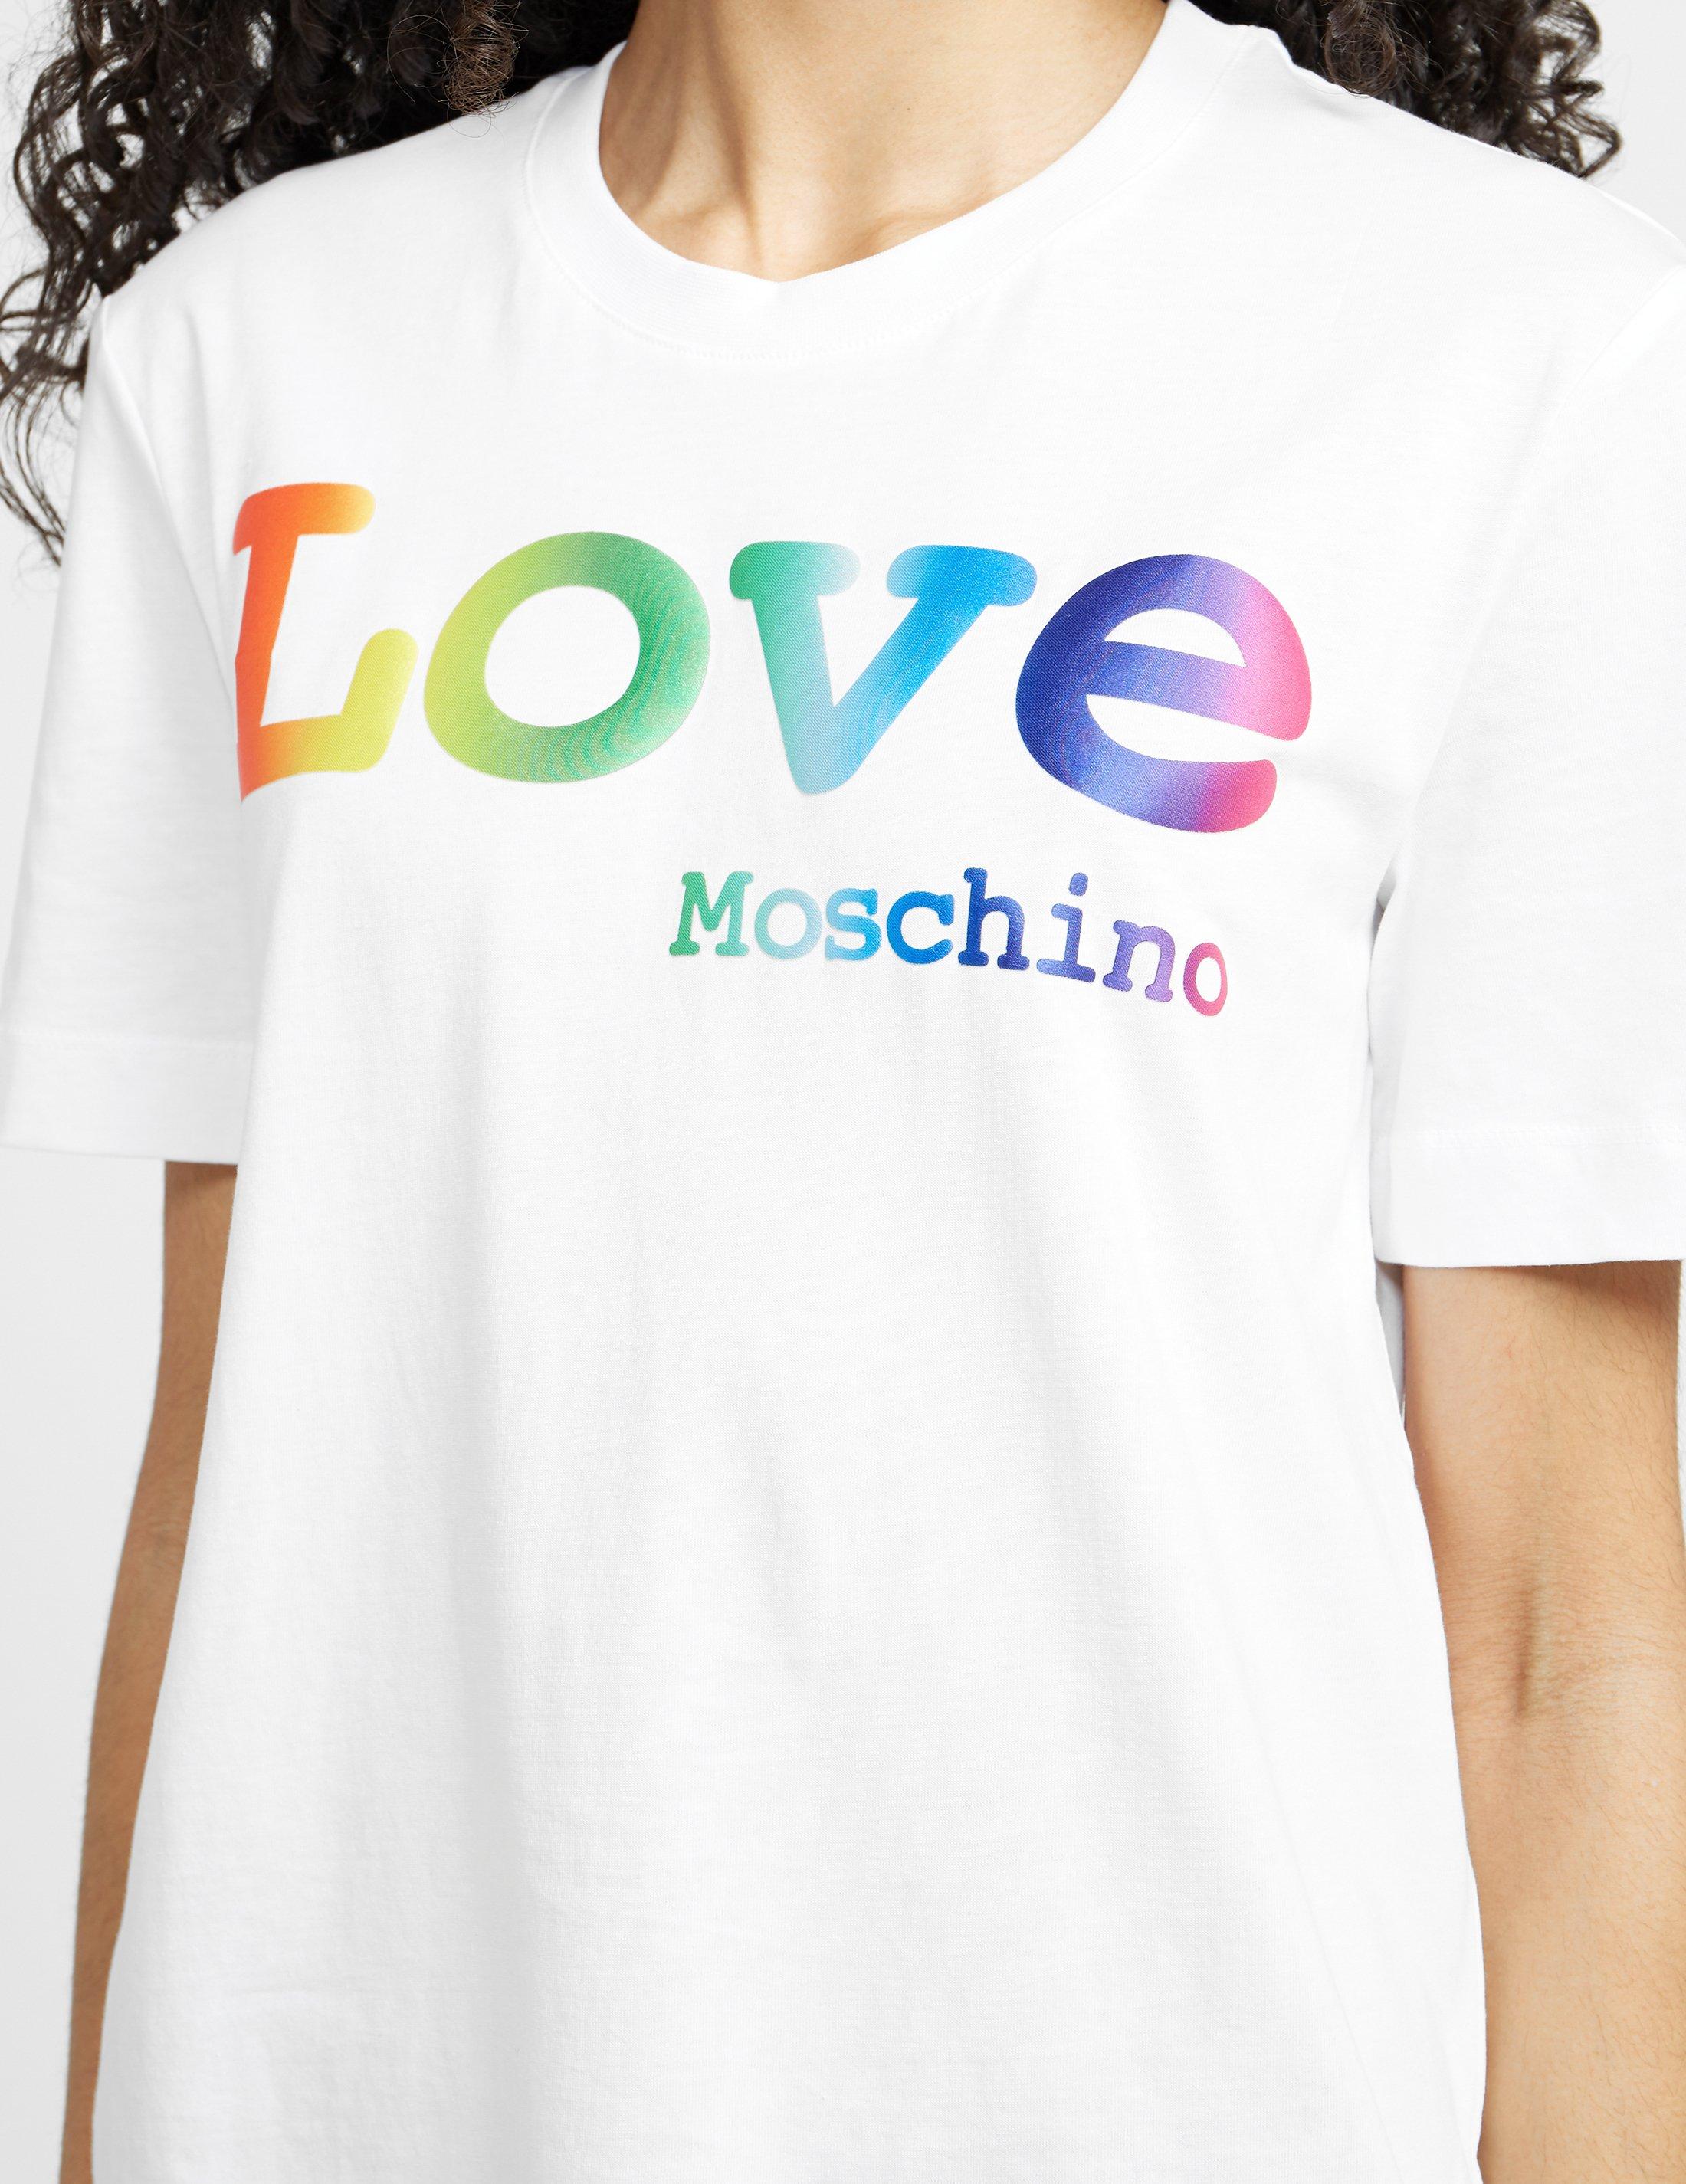 moschino rainbow t shirt